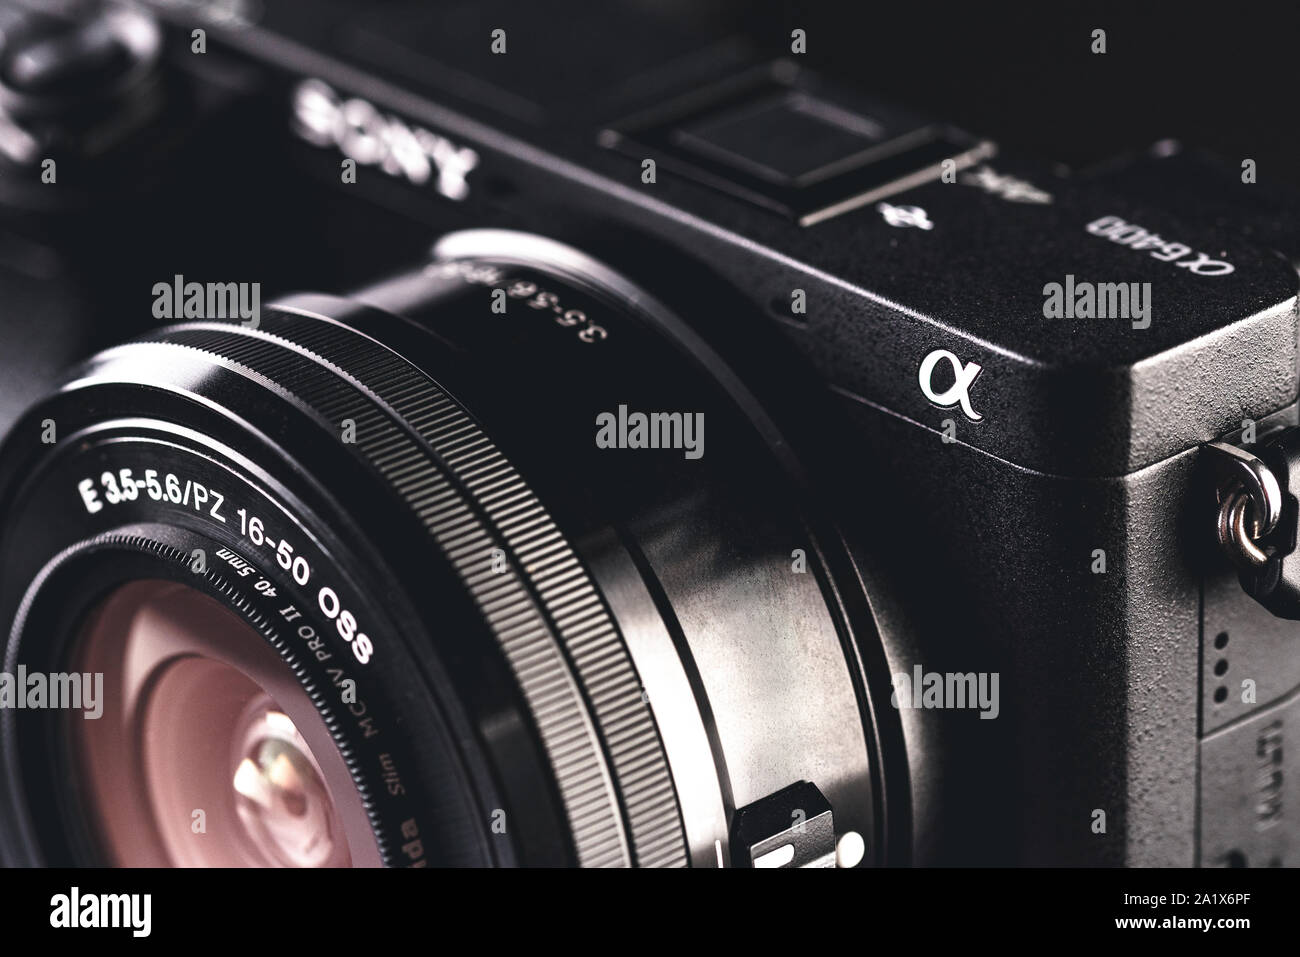 Primer plano de la cámara Sony Alpha 6400 mirrorless Fotografía de stock -  Alamy